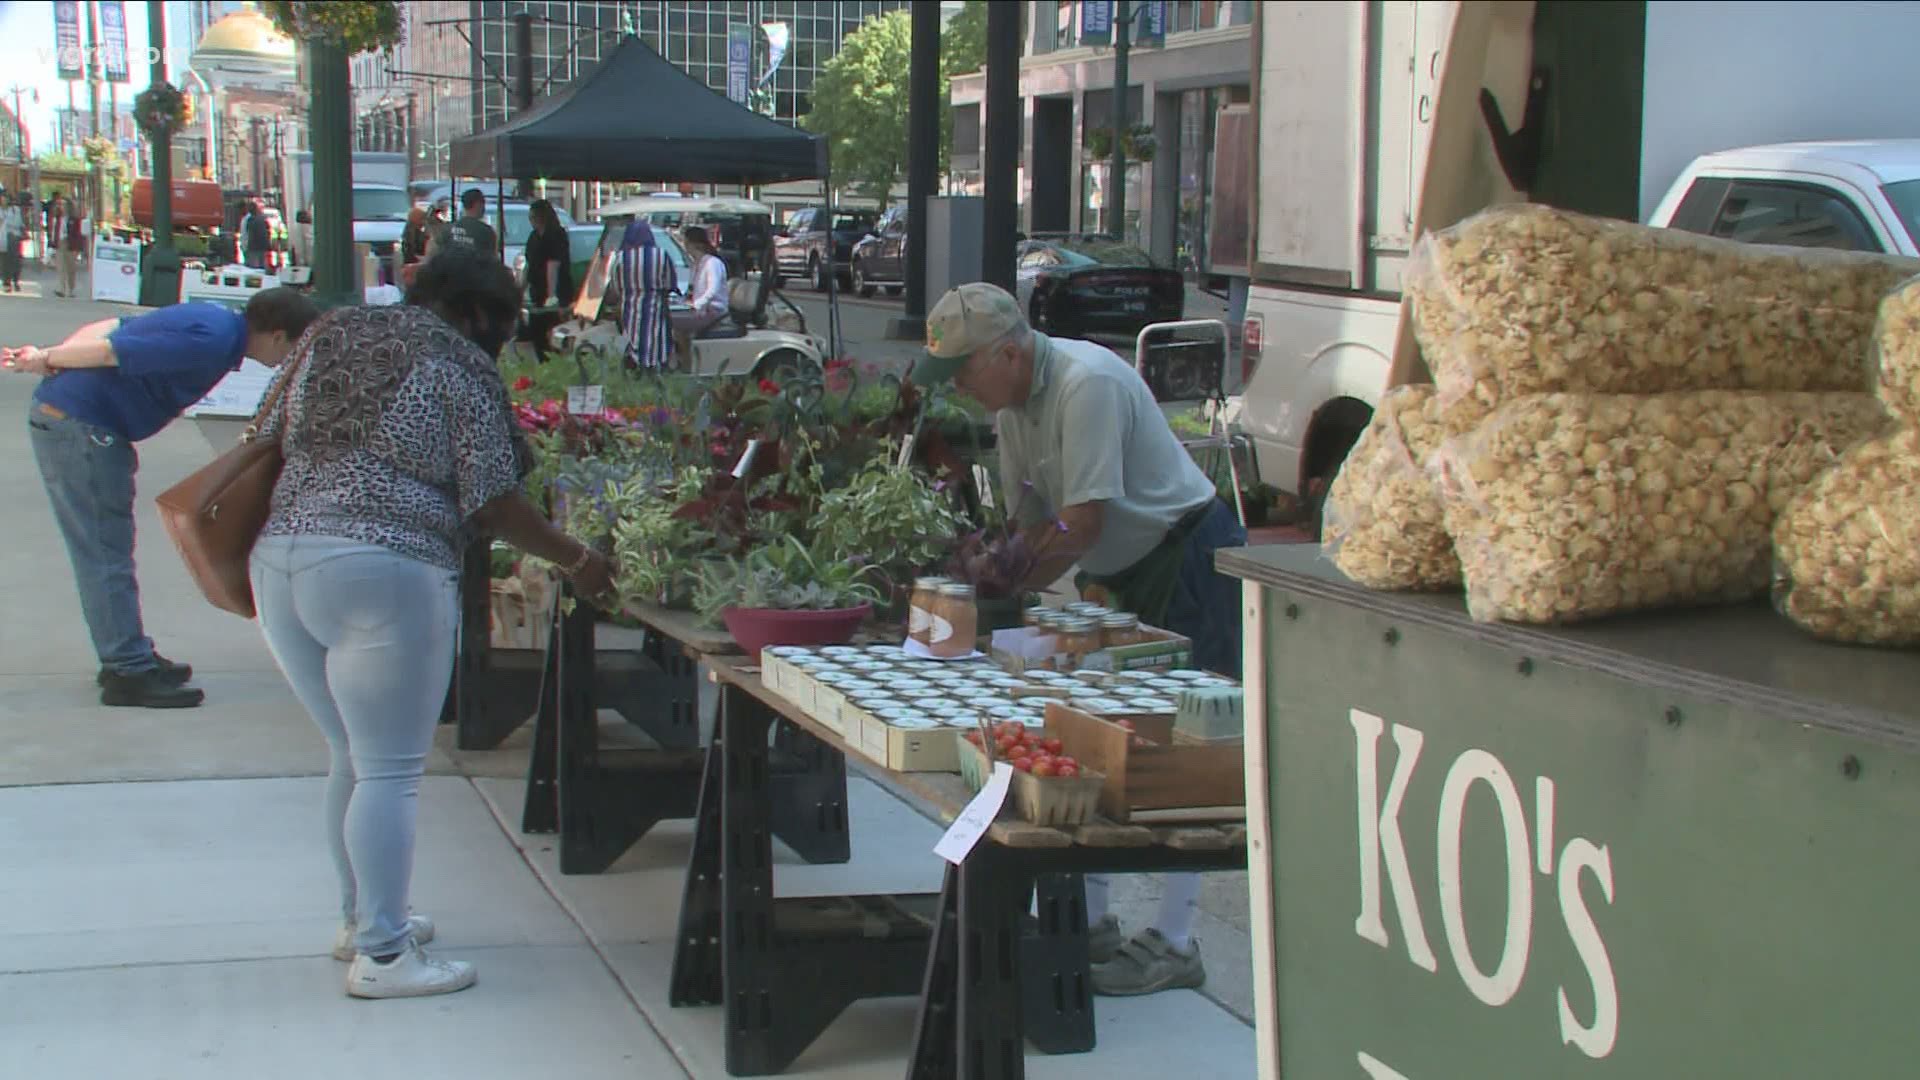 Country farmers market open in downtown Buffalo